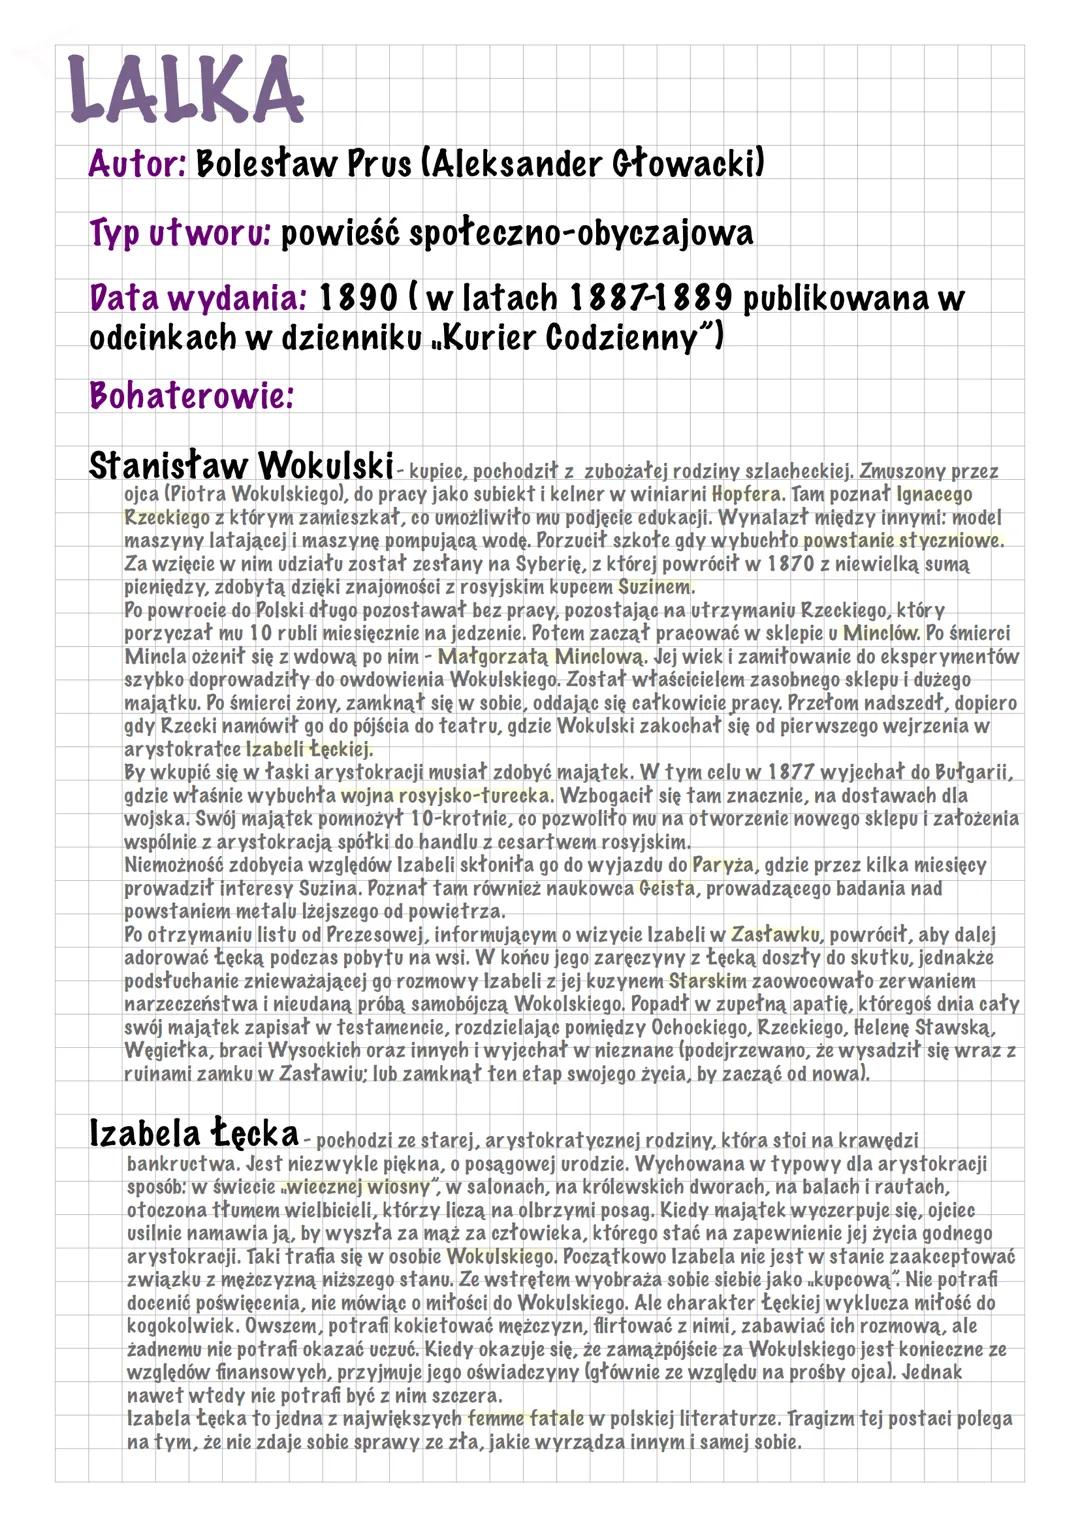 LALKA
Autor: Bolesław Prus (Aleksander Głowacki)
Typ utworu: powieść społeczno-obyczajowa
Data wydania: 1890 ( w latach 1887-1889 publikowan